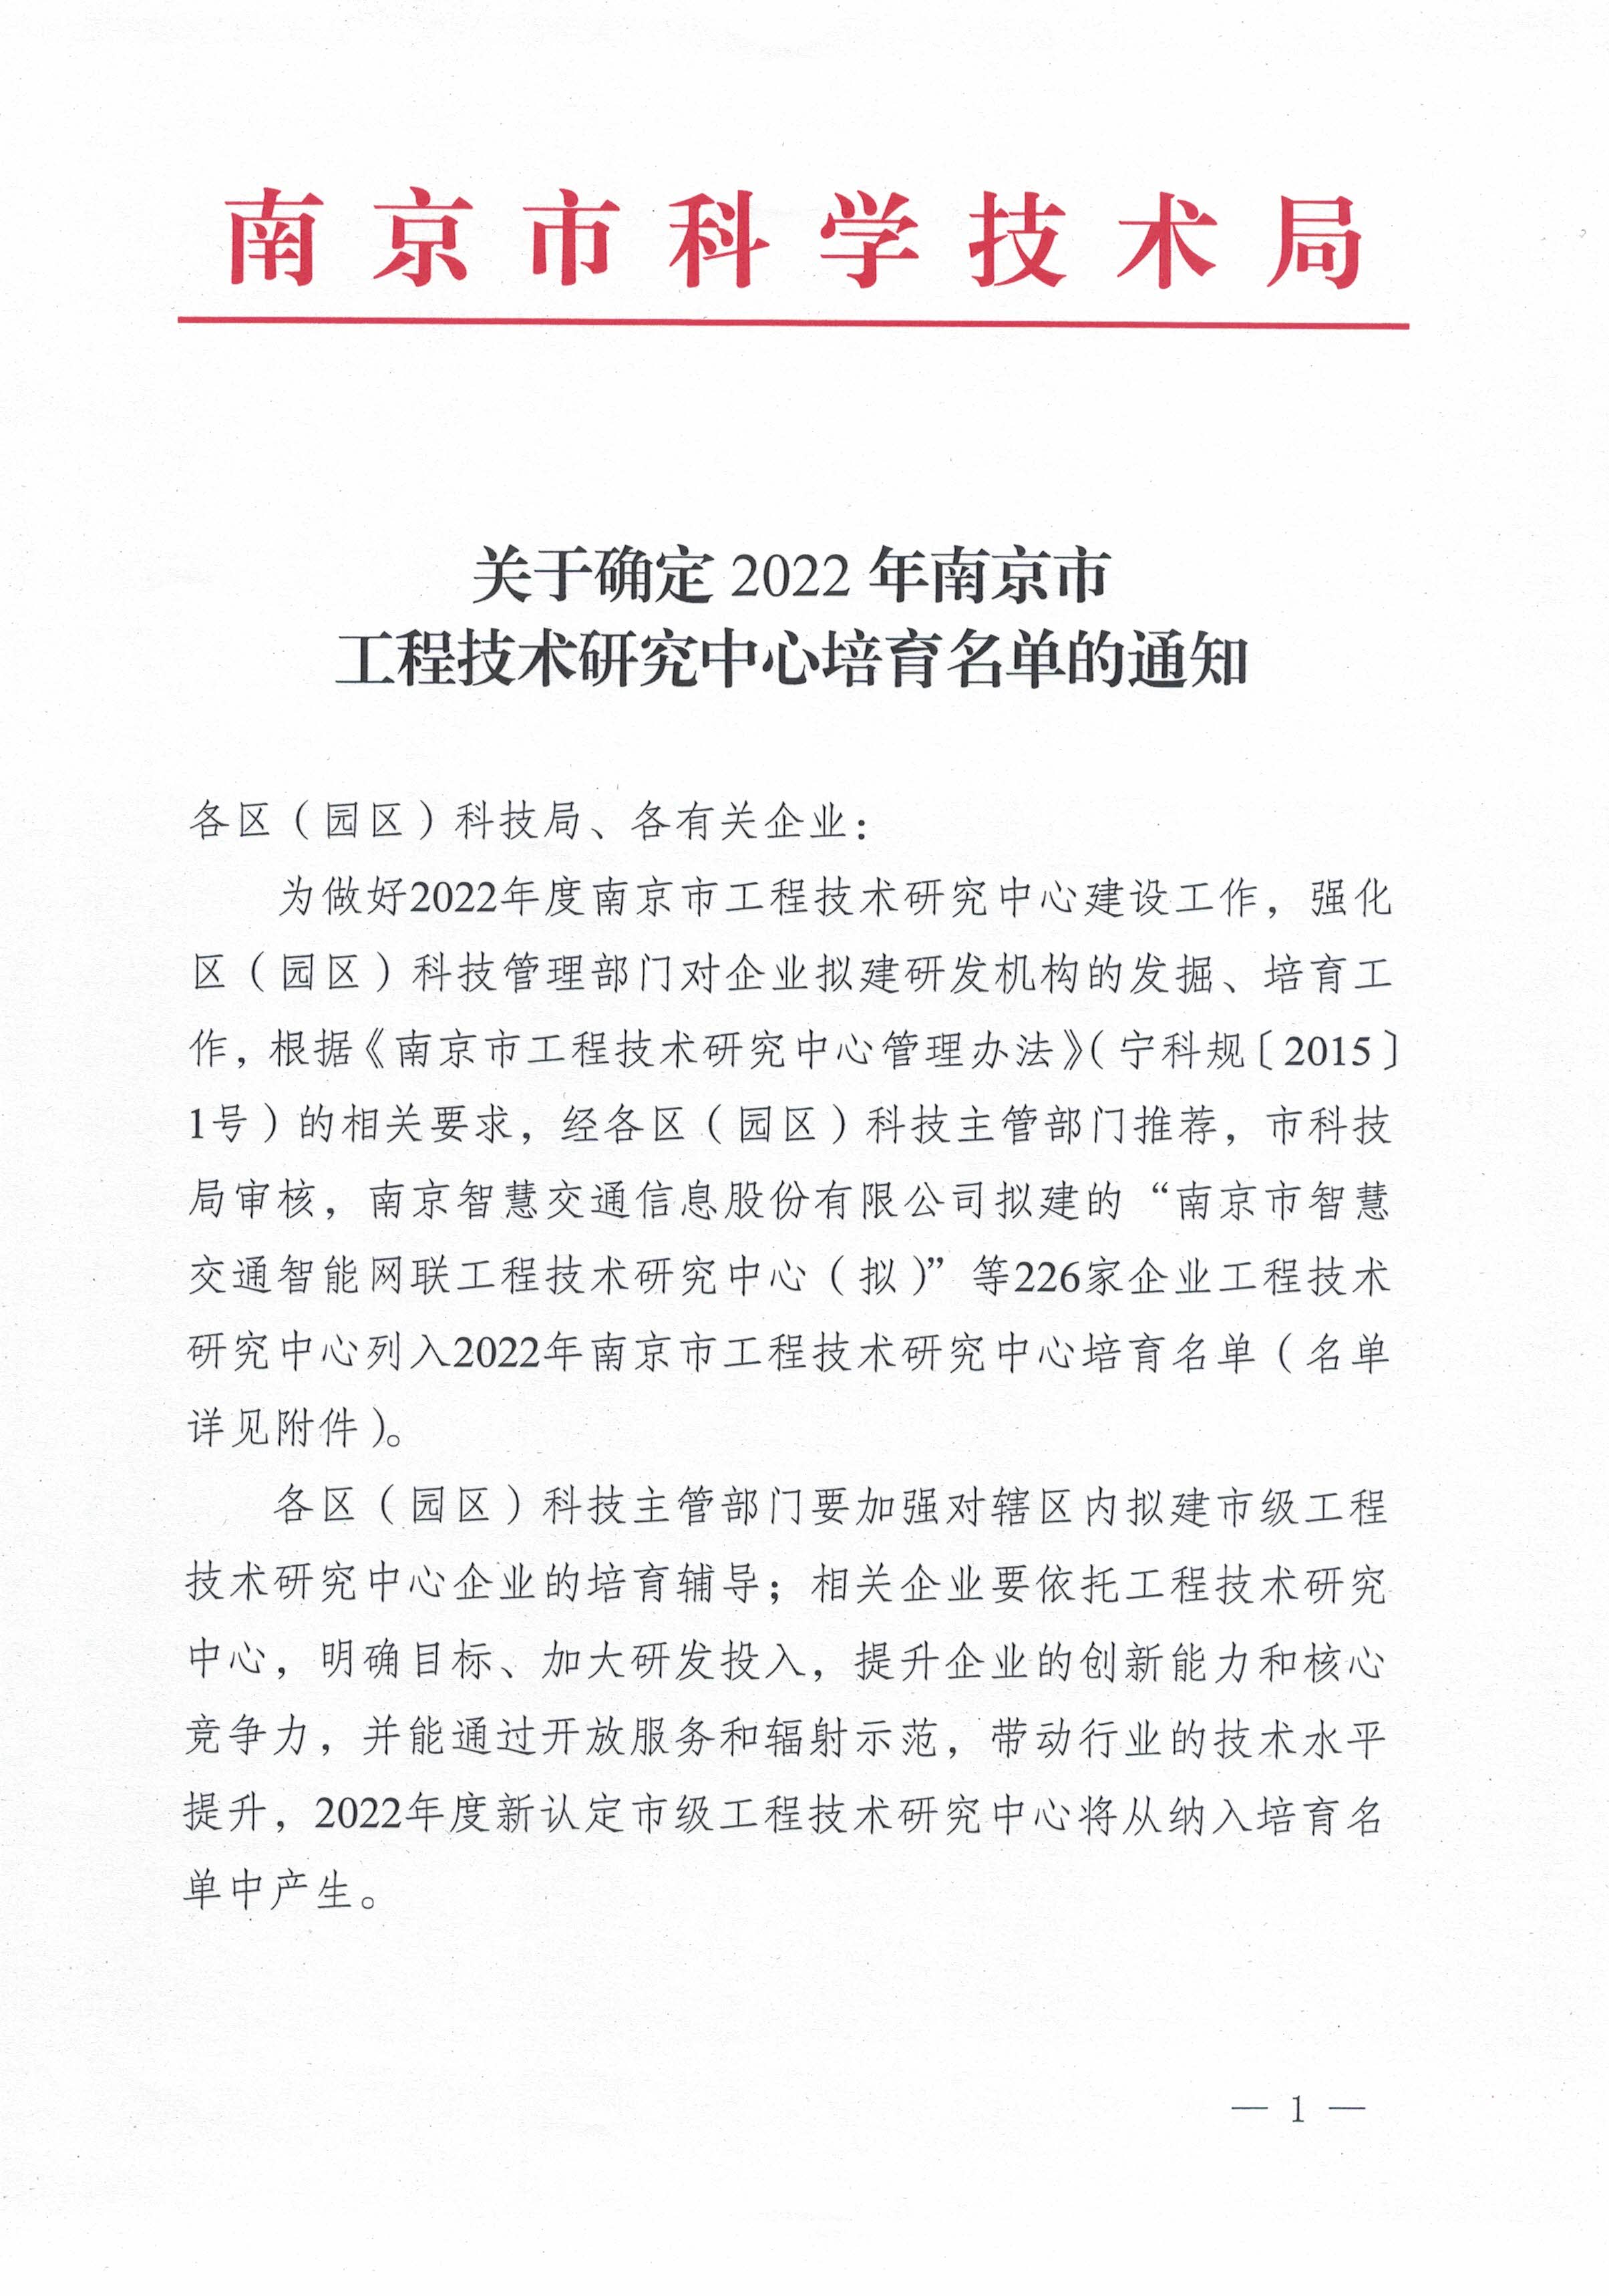 2022年度南京市工程技术研究中心培育名单_页面_1.jpg